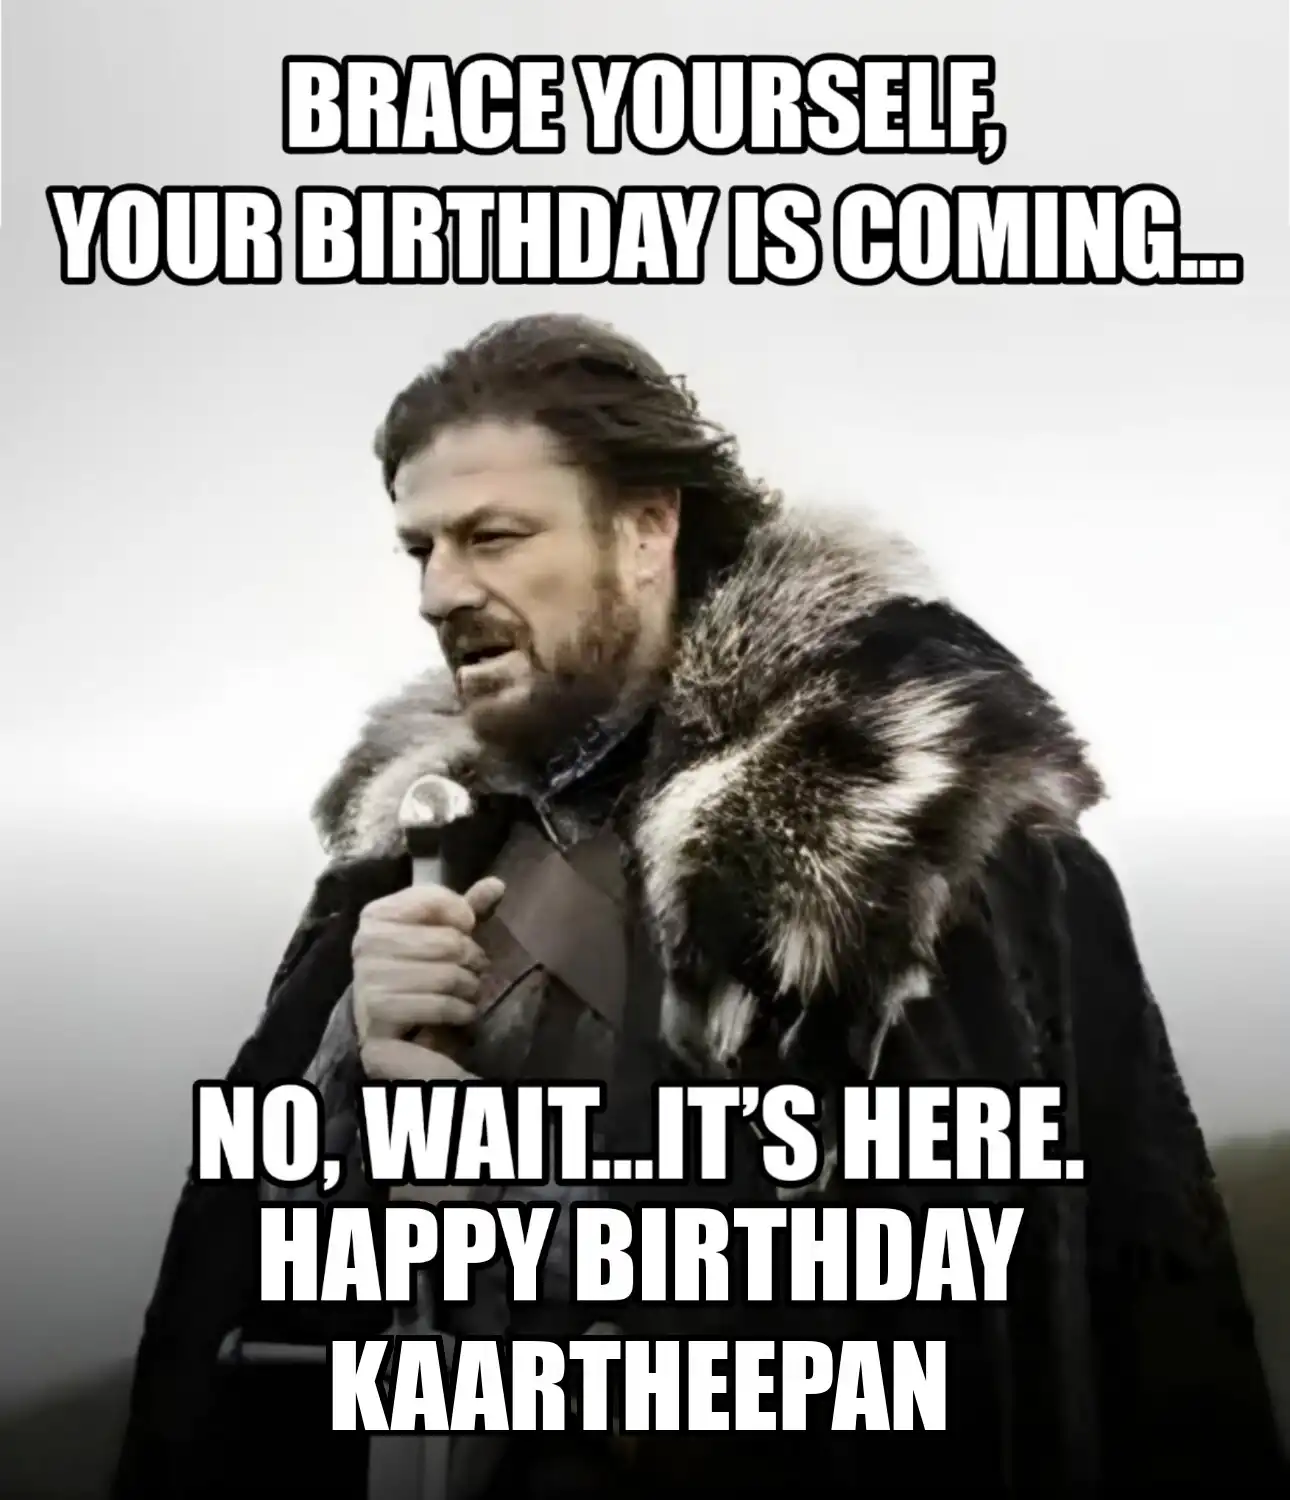 Happy Birthday Kaartheepan Brace Yourself Your Birthday Is Coming Meme